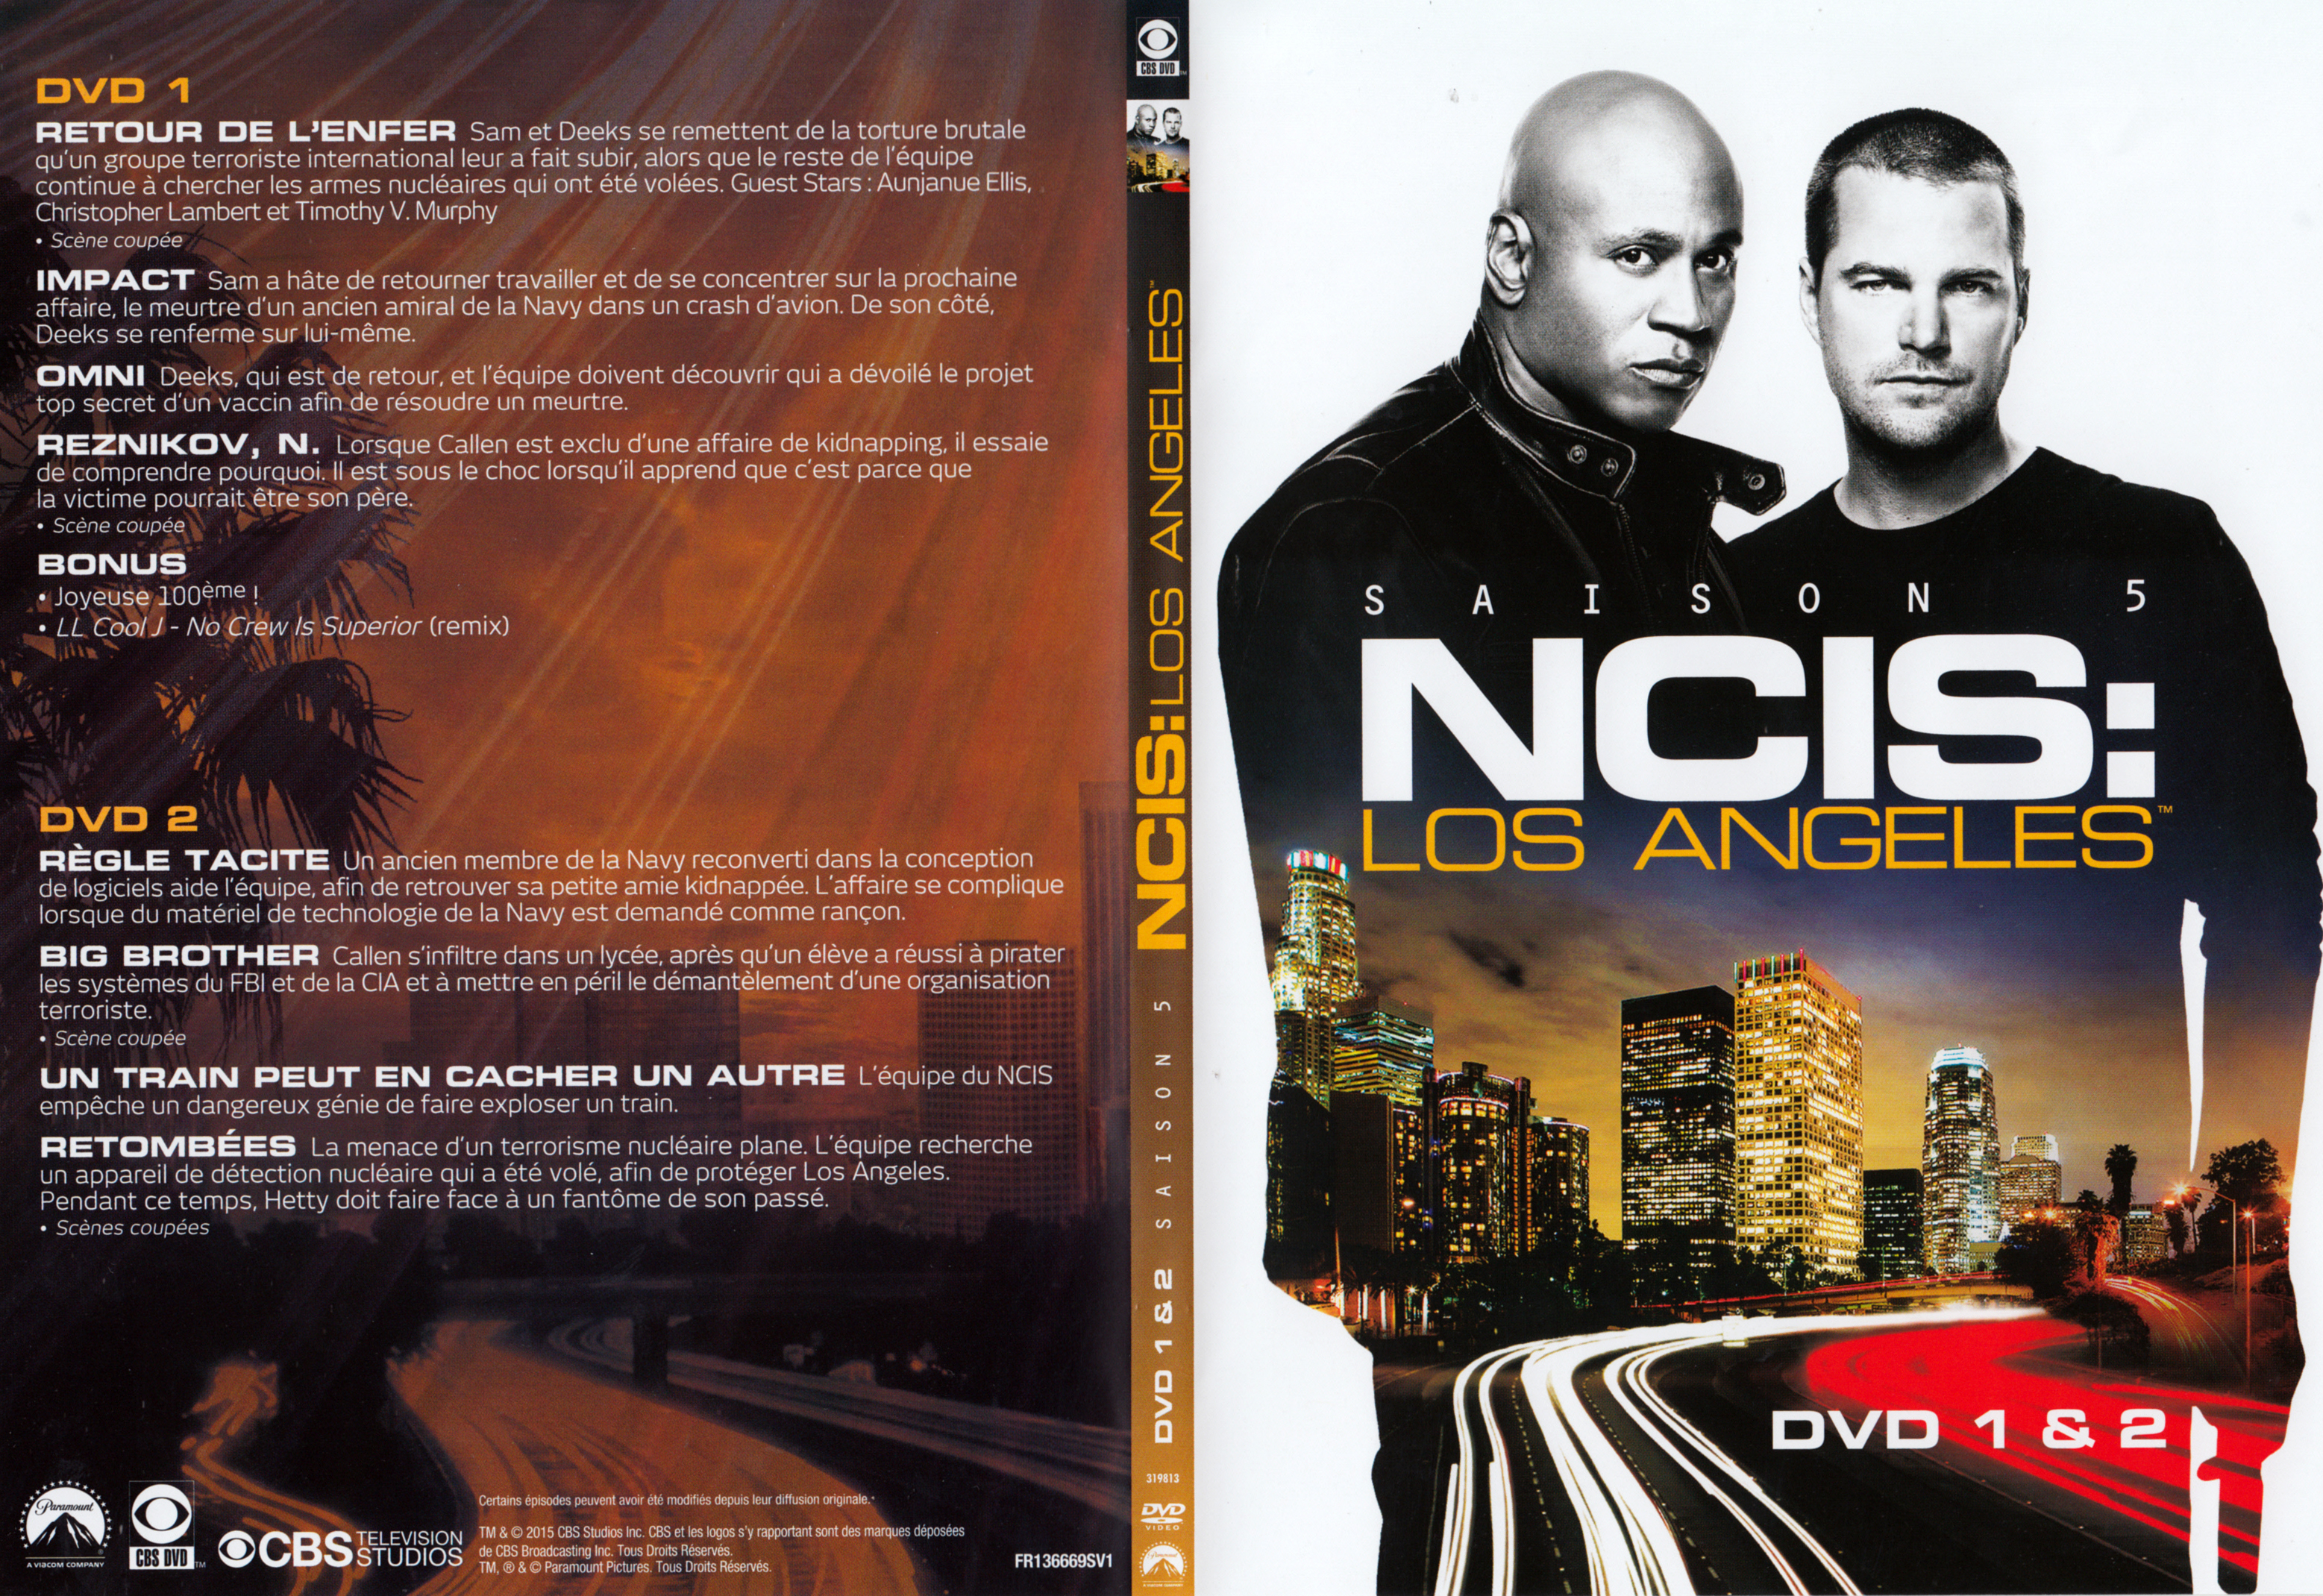 Jaquette DVD NCIS Los Angeles Saison 5 DVD 1